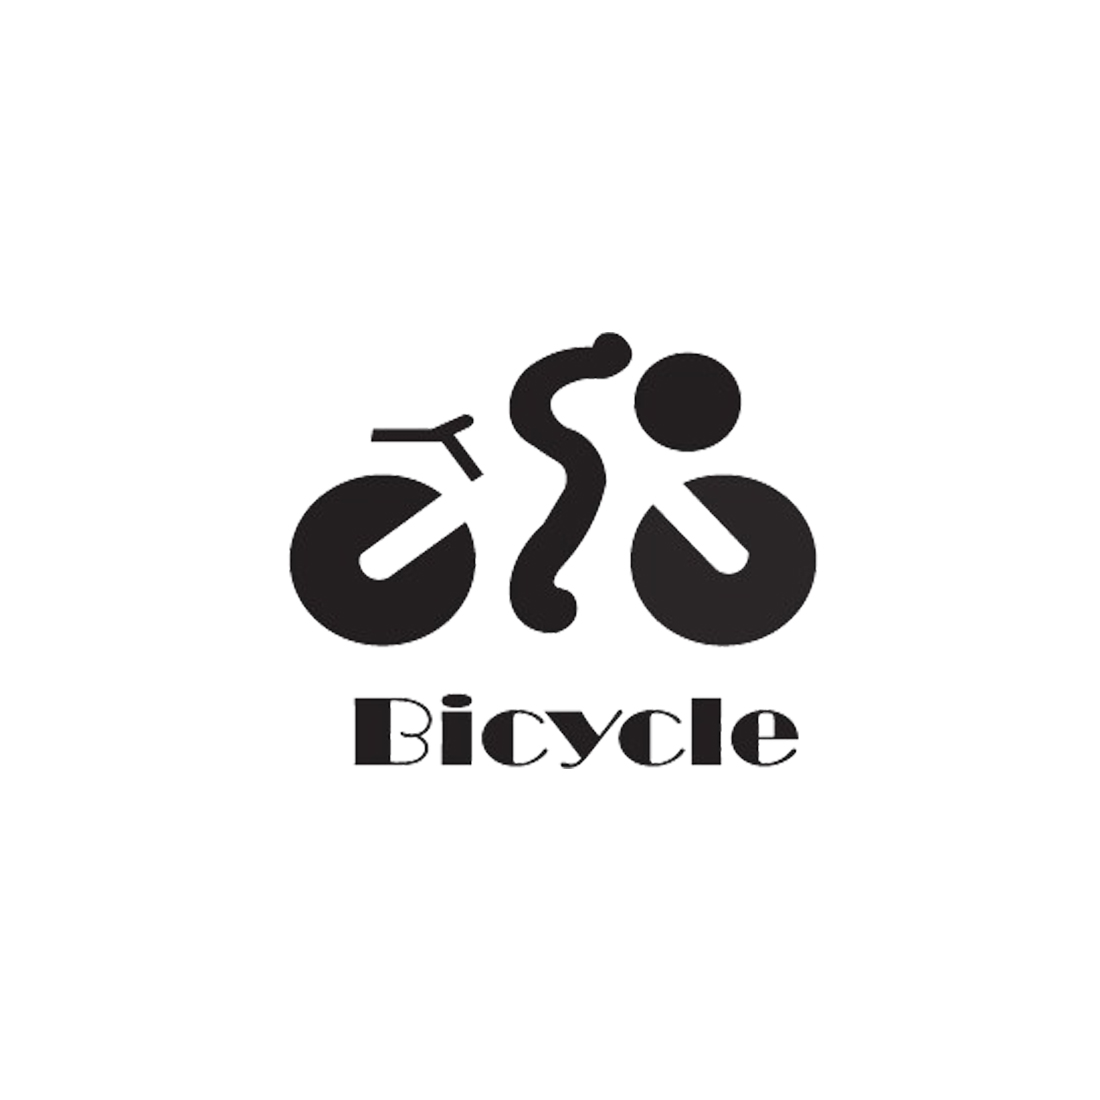 bicycle logo01 736